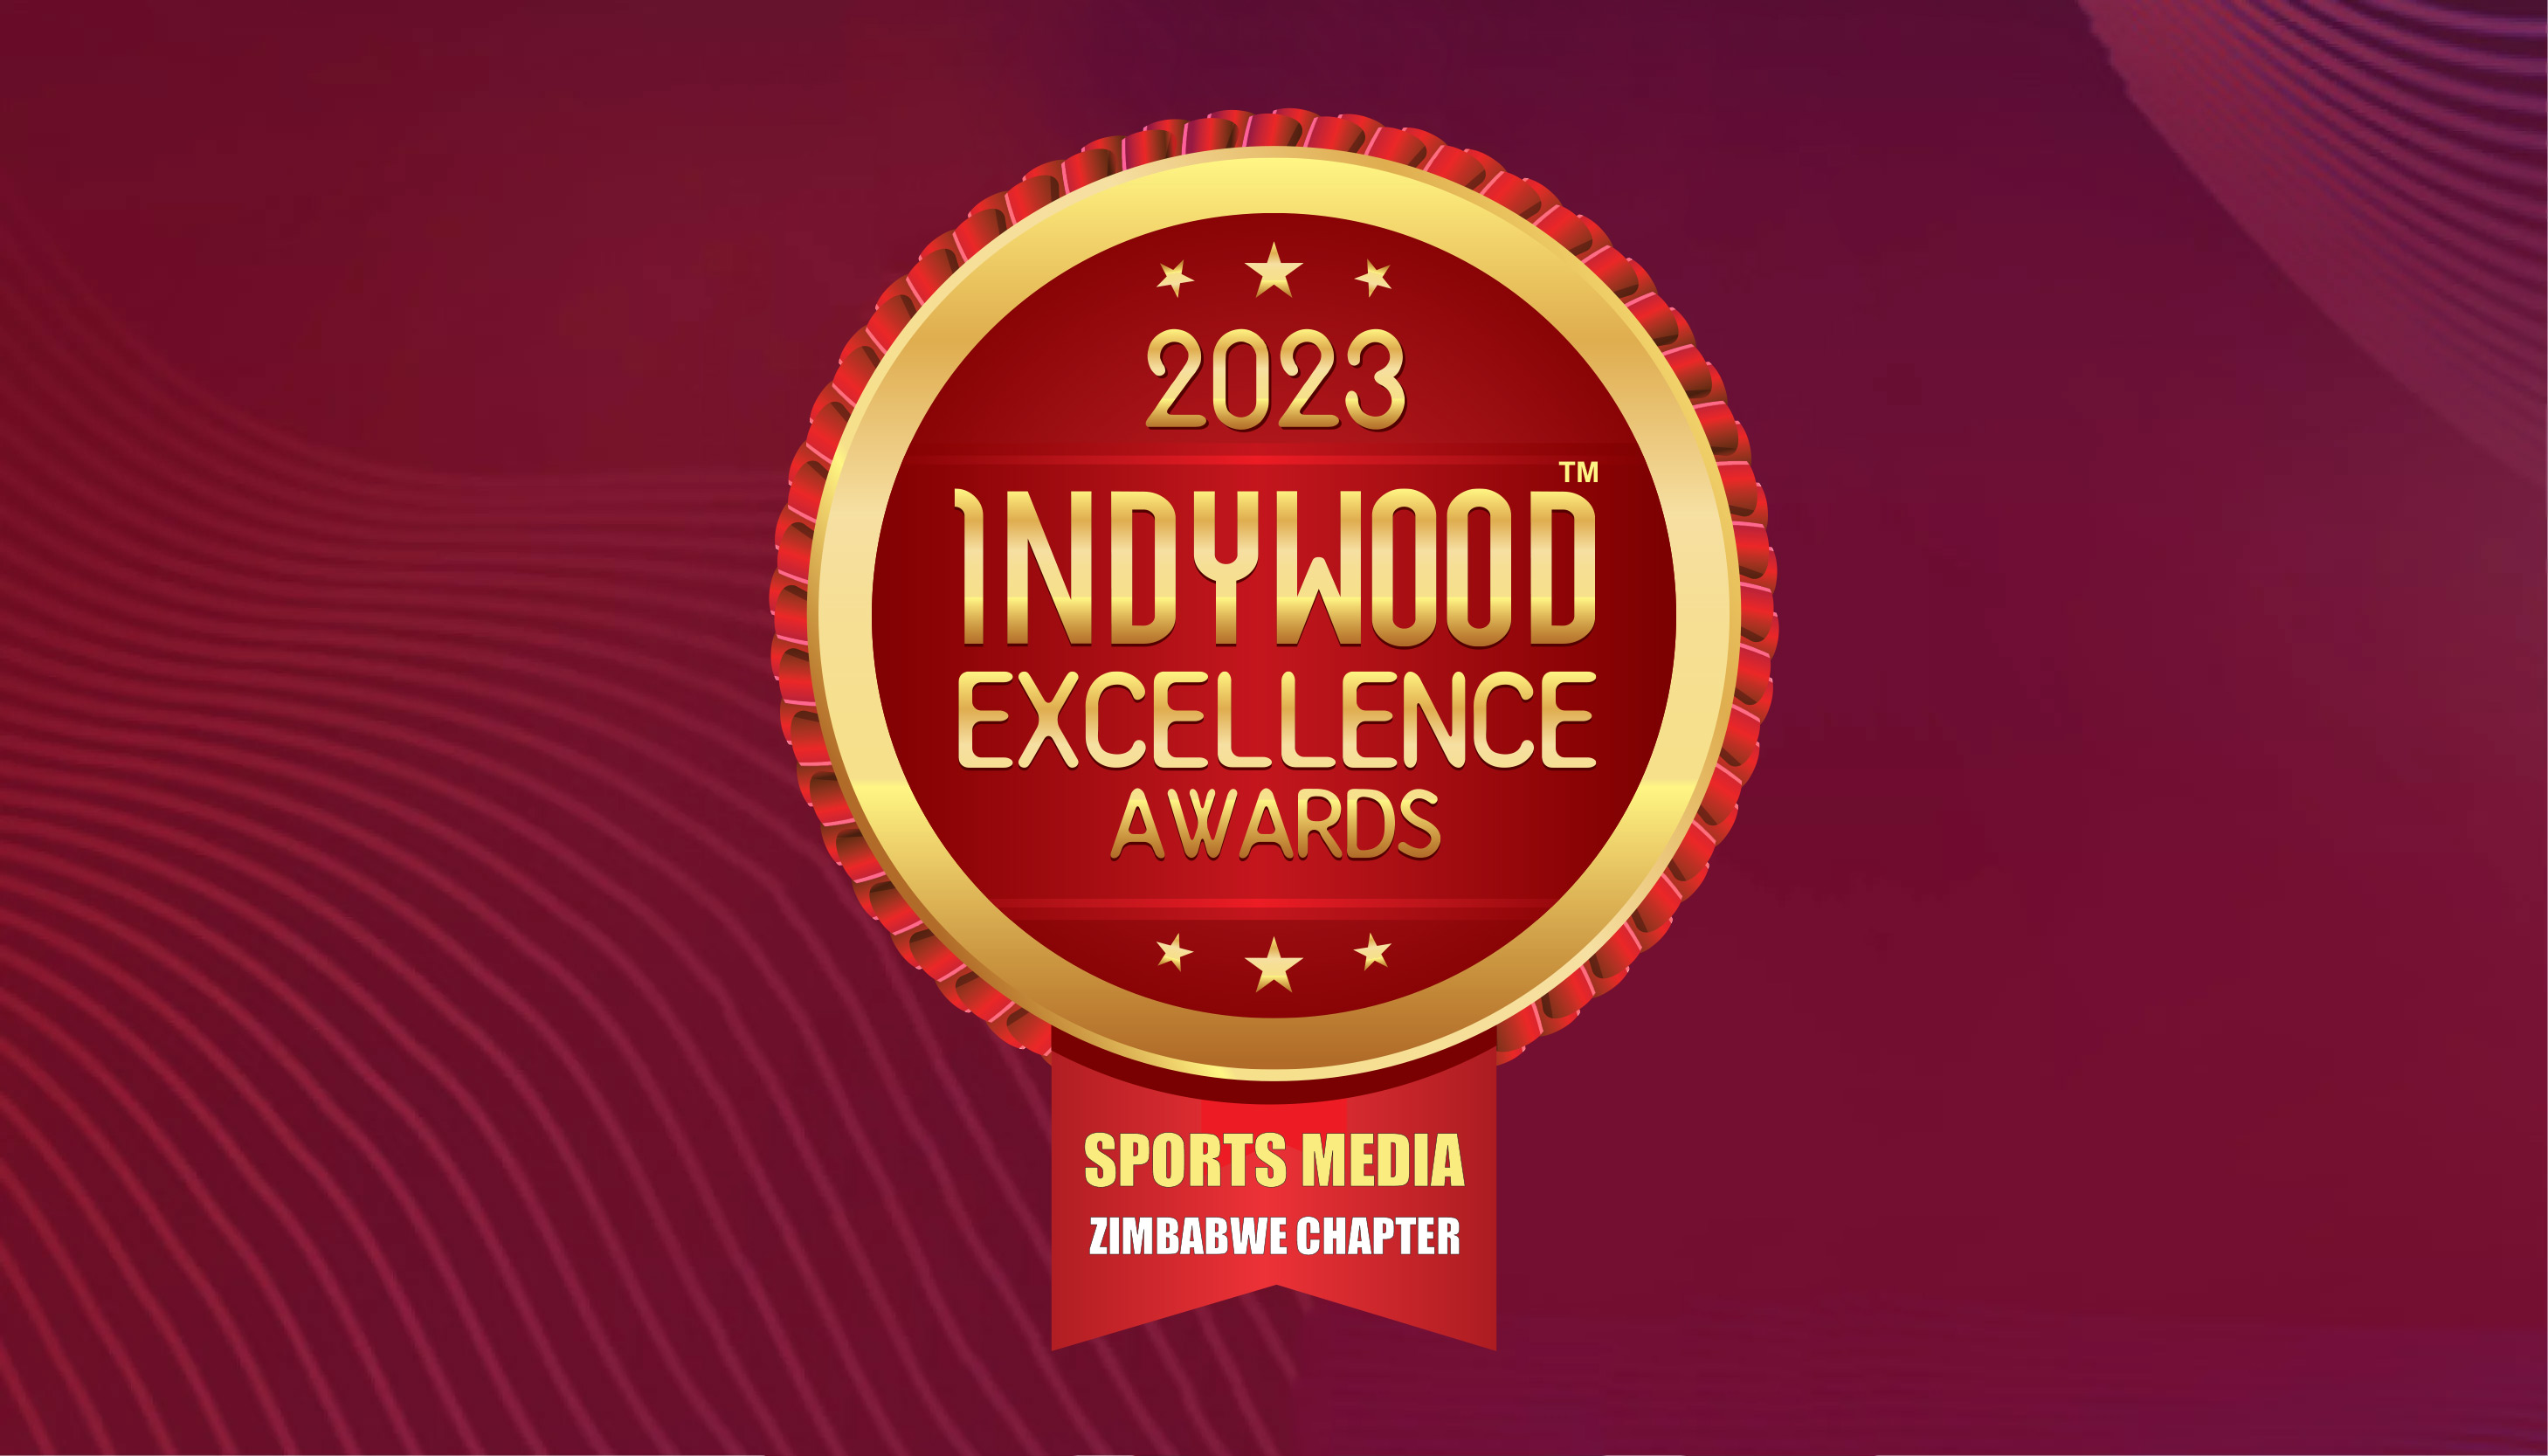 Indywood Sports Media Excellence Awards 2023 - Zimbabwe Chapter